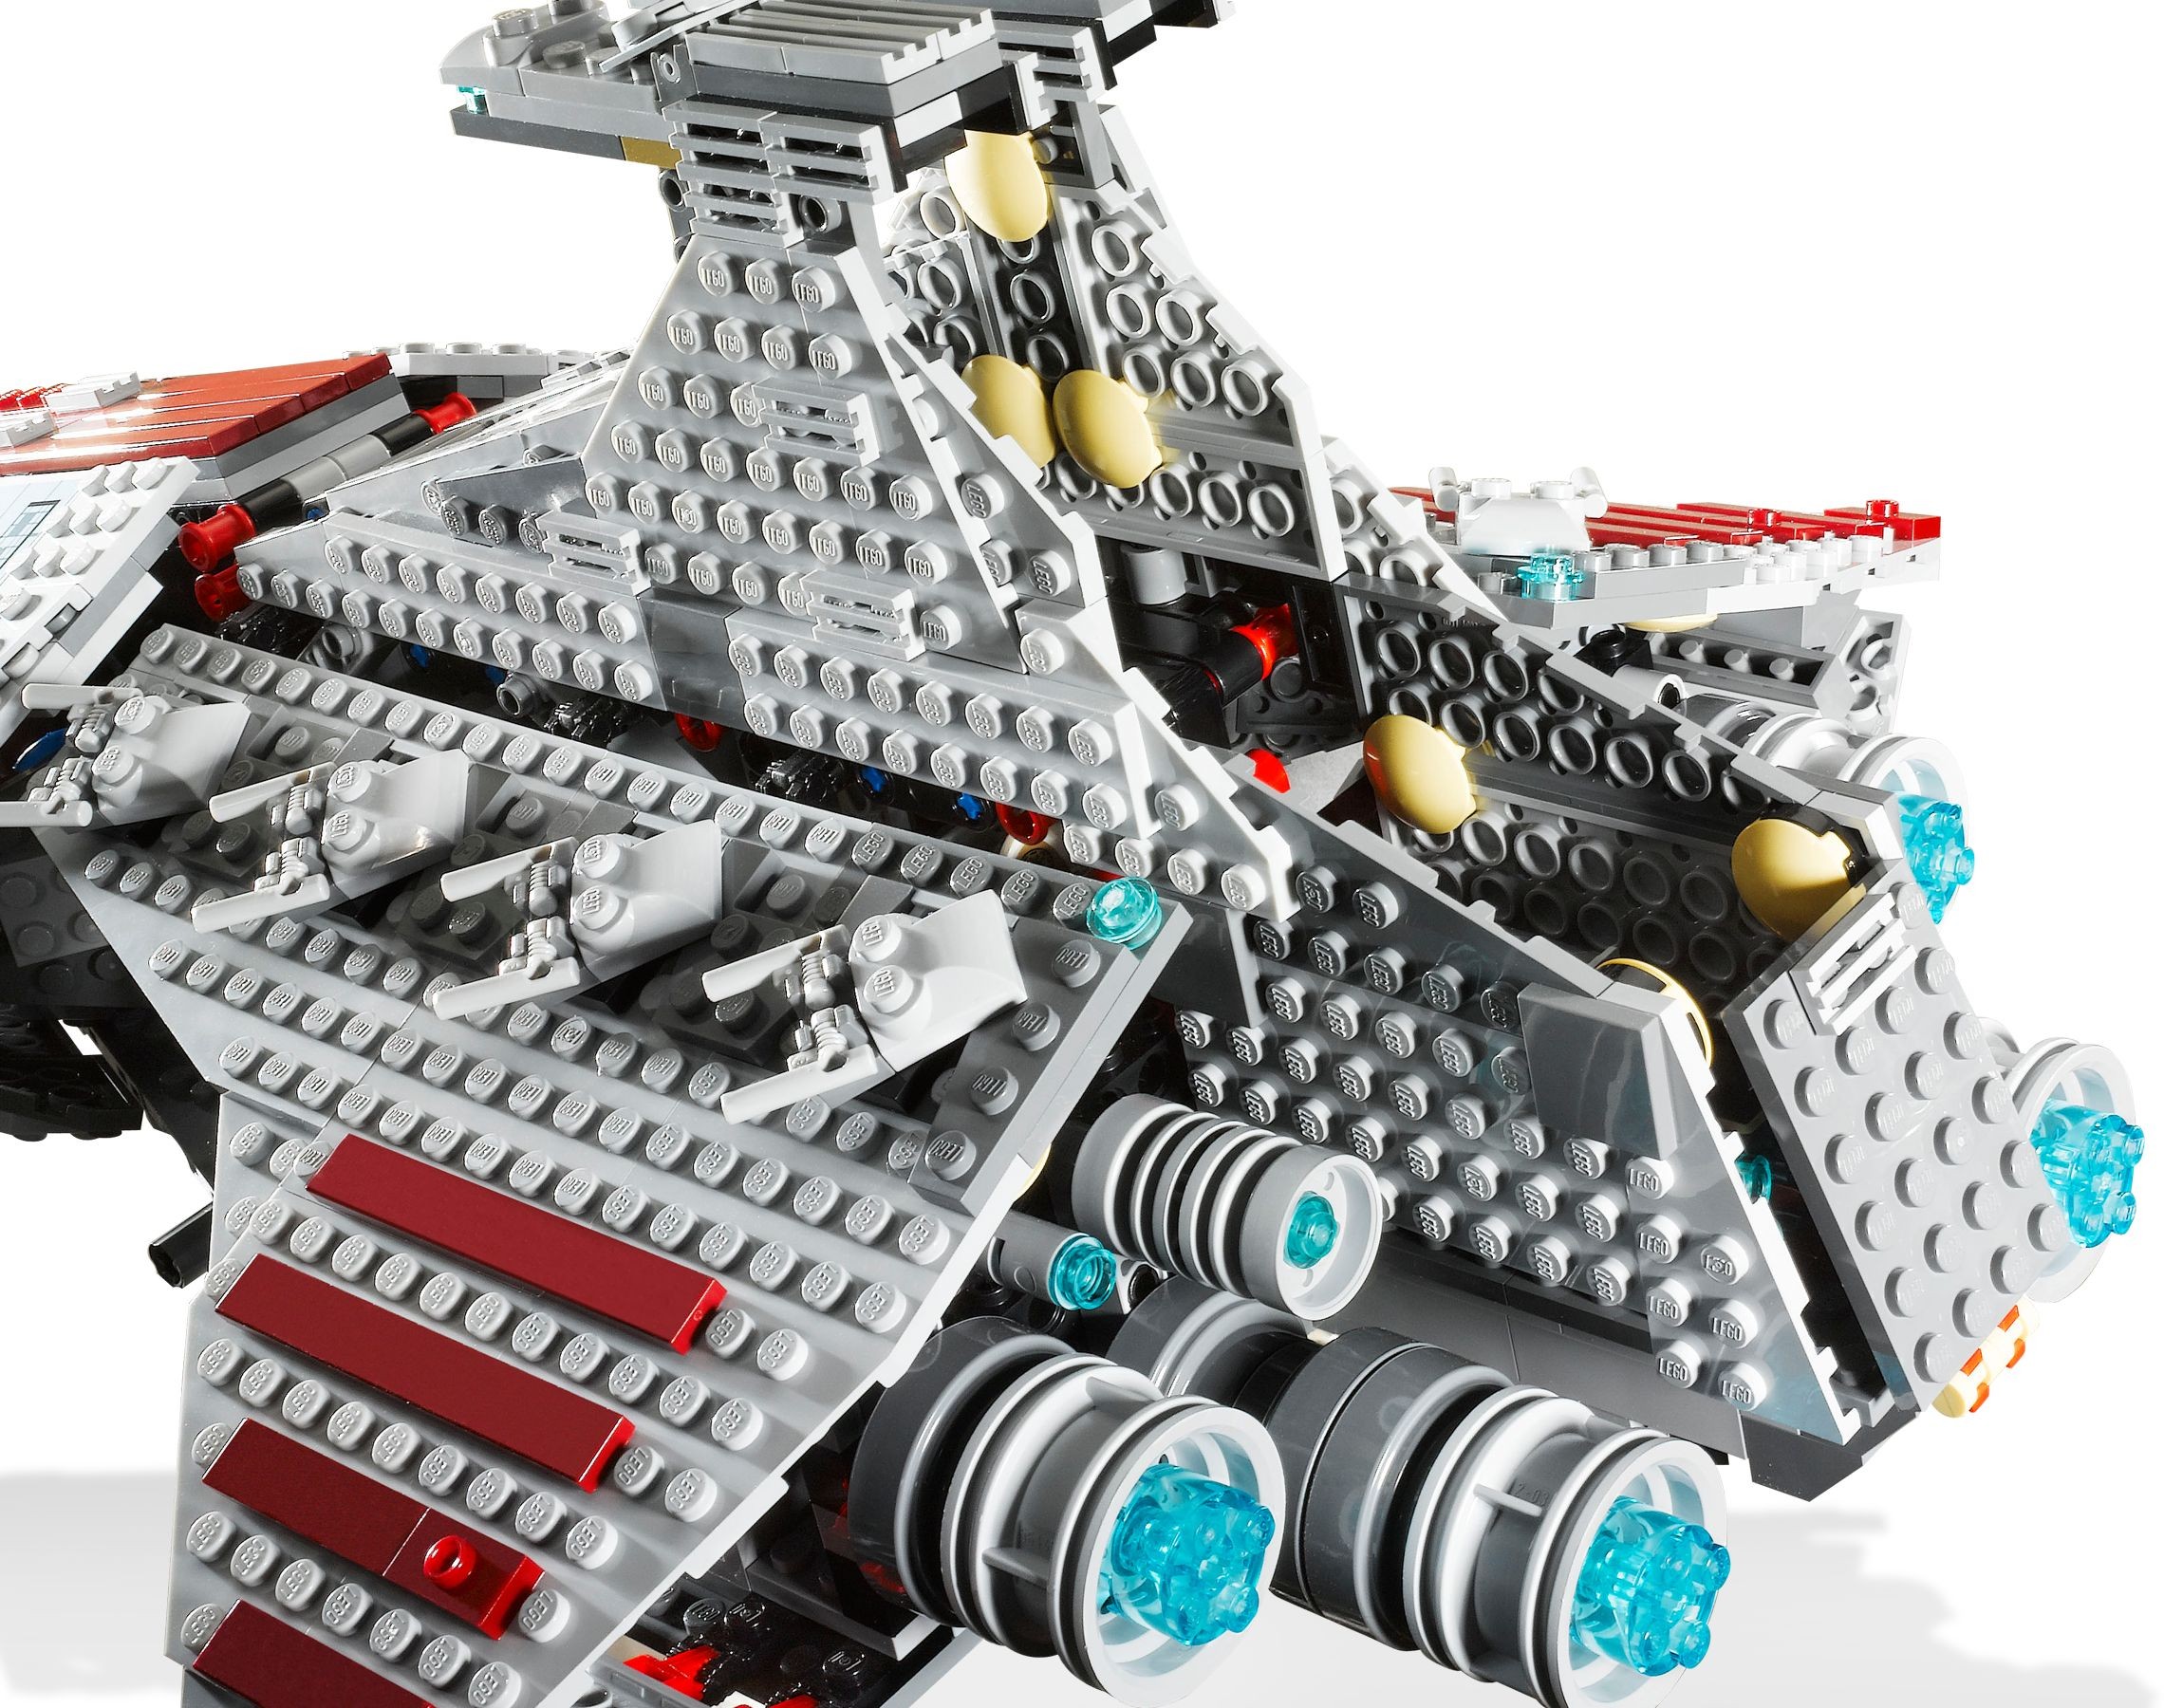 LEGO Star Wars: Venator-Class Republic Attack Cruiser (8039) for